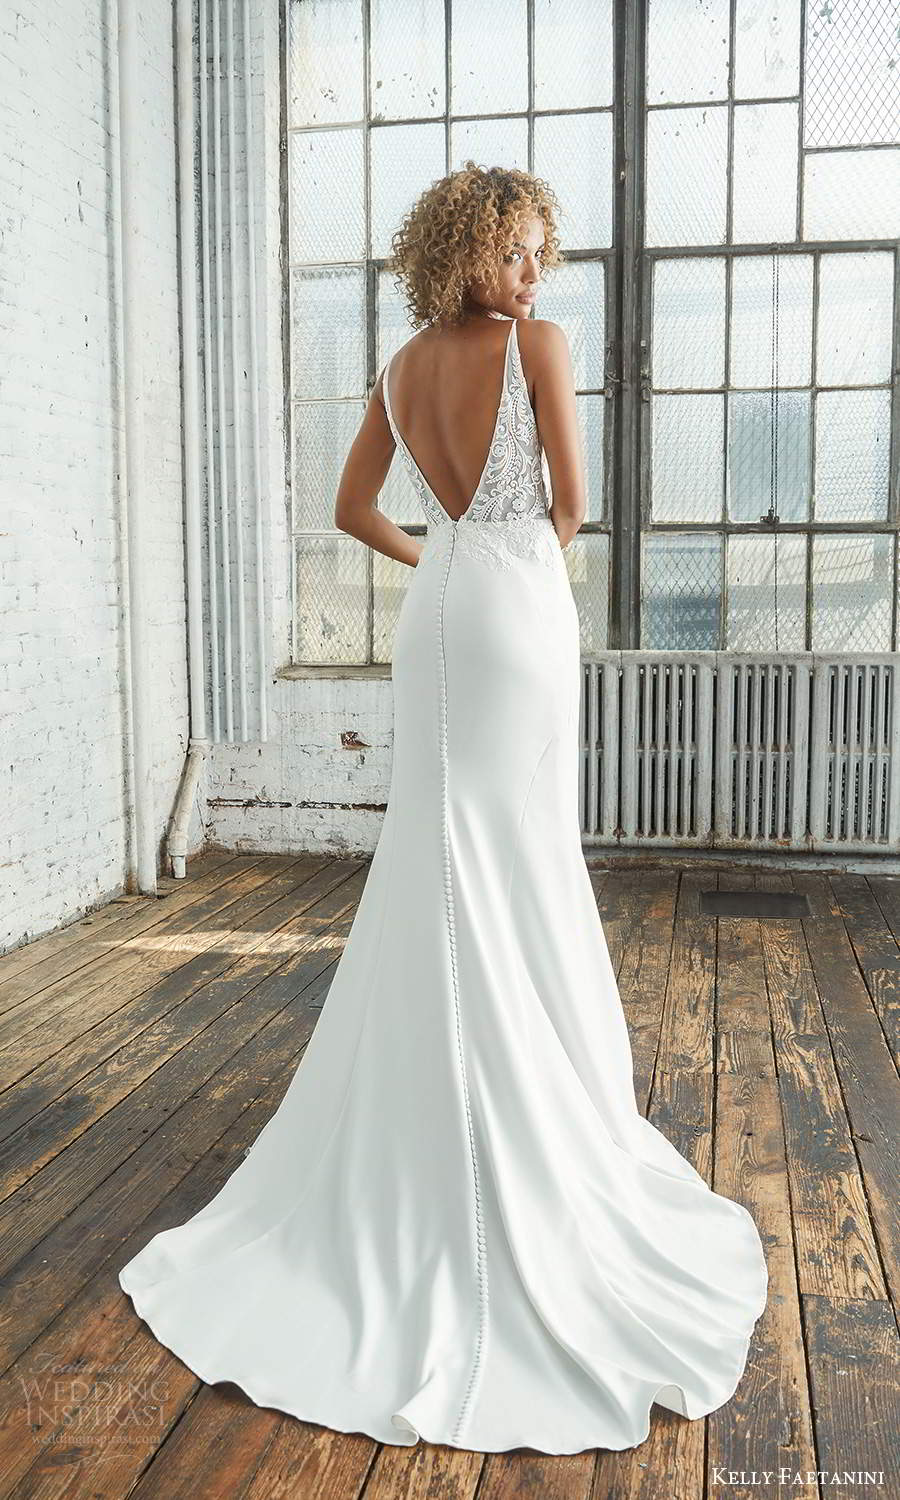 kelly faetanini 2021 bridal sleeveless thin straps plunging v neckline embellished bodice sheath wedding dress (14) bv